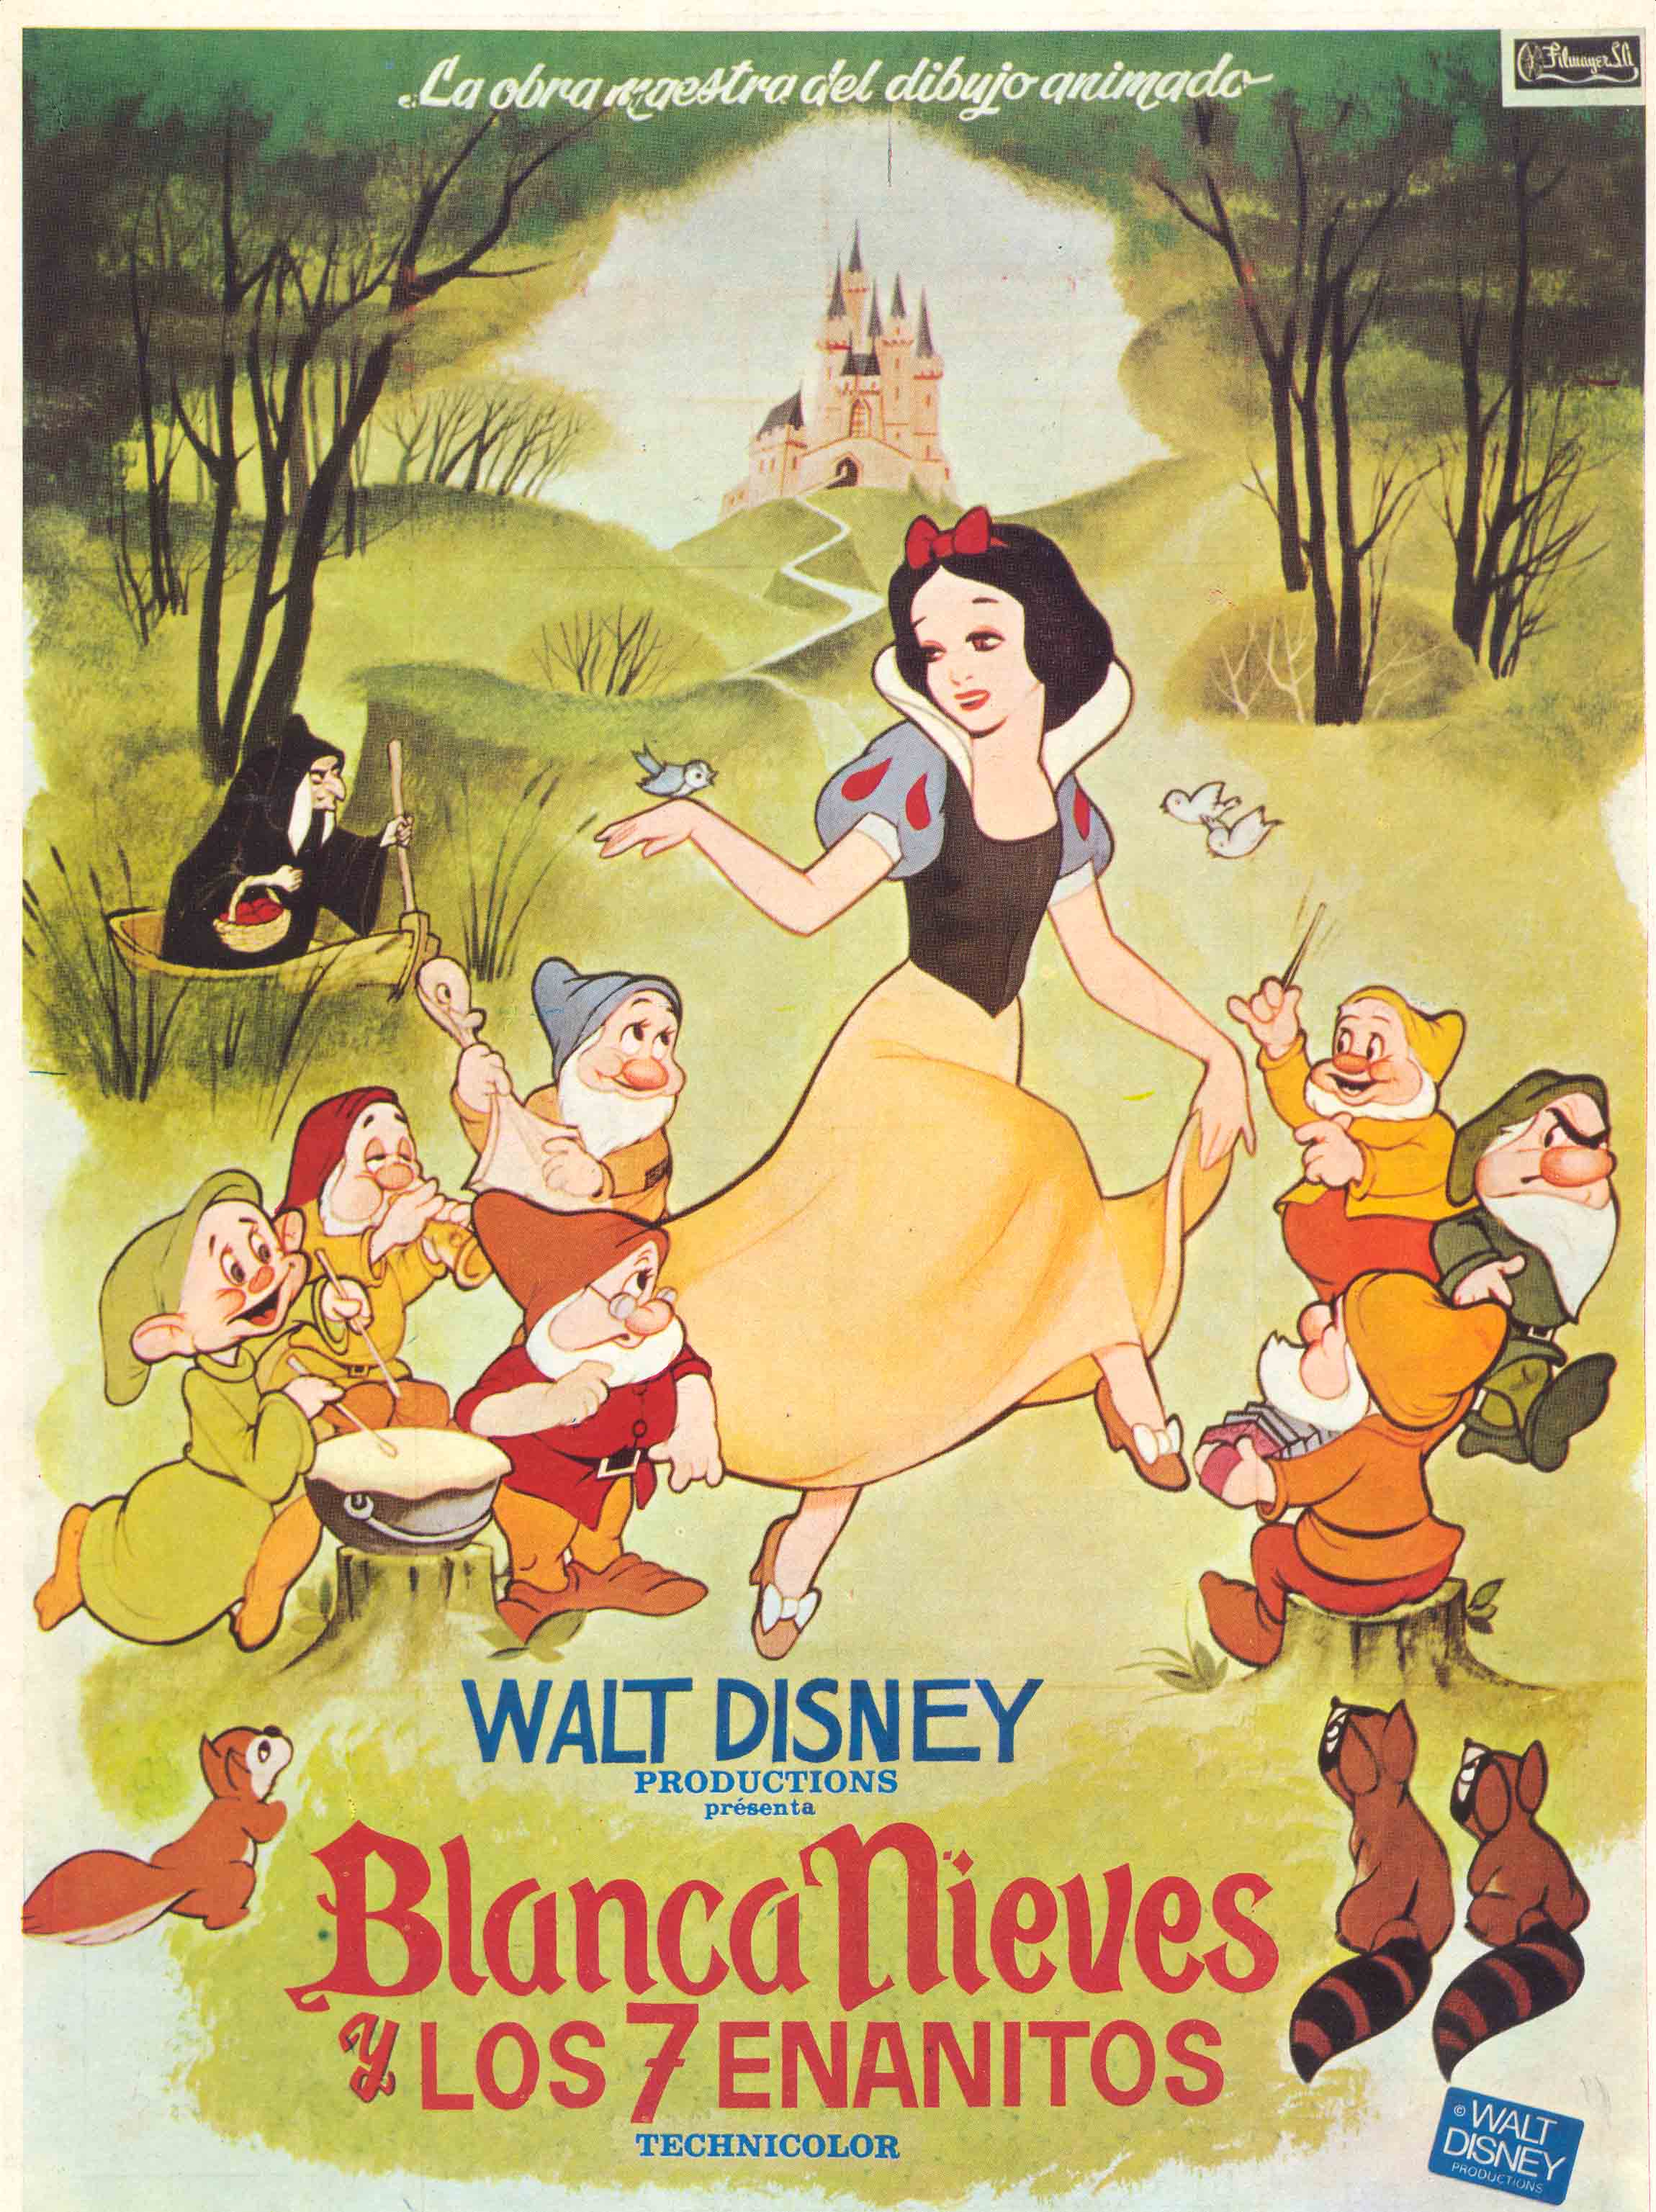 Blancanieves y los siete enanitos | Historias del celuloide - Blancanieves Y Los Siete Enanitos Cuento Disney